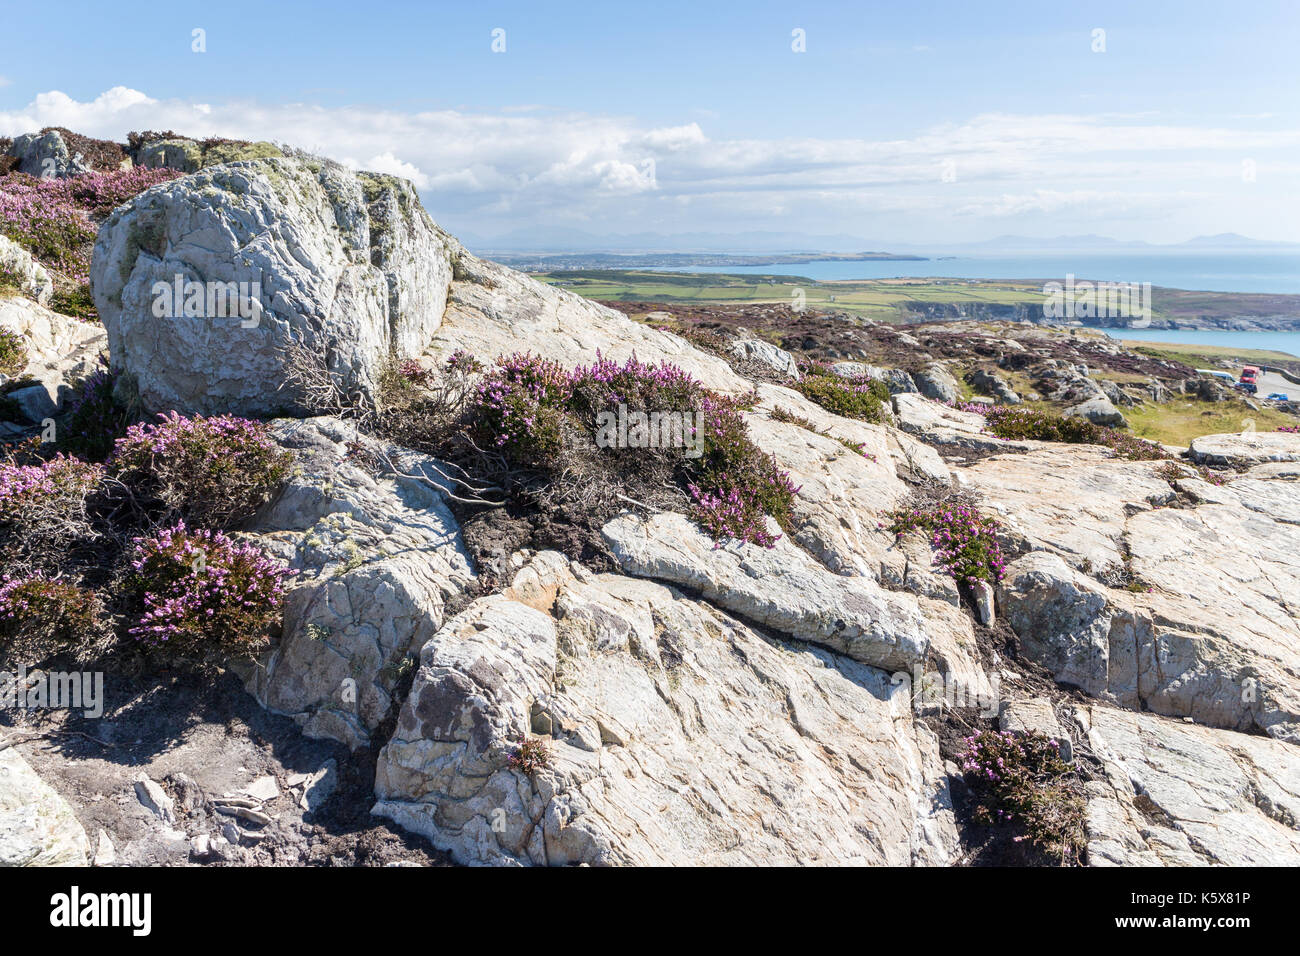 Blick über Felsen und lila Heidekraut auf die zerklüftete Küste, Anglesey, Wales, Vereinigtes Königreich, Großbritannien Stockfoto